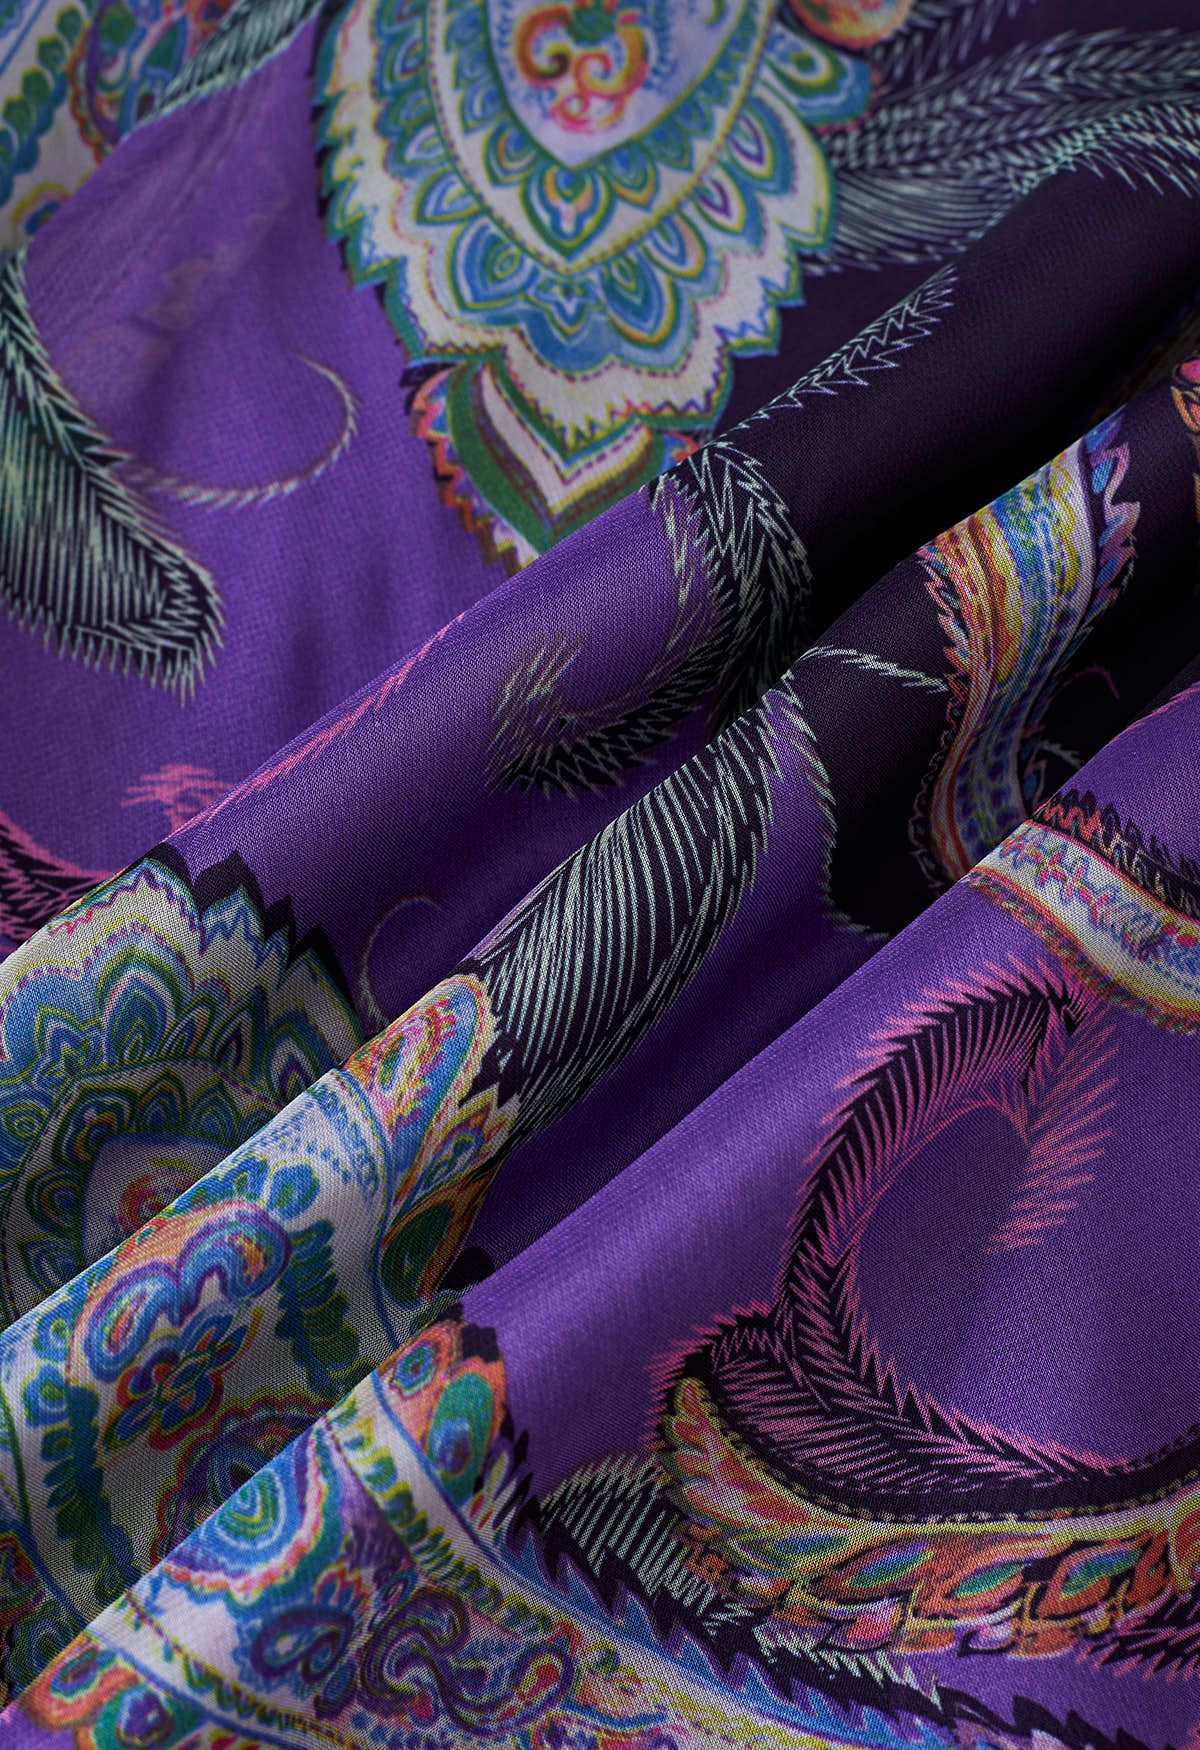 Jupe longue en mousseline de soie Paisley exotique en violet